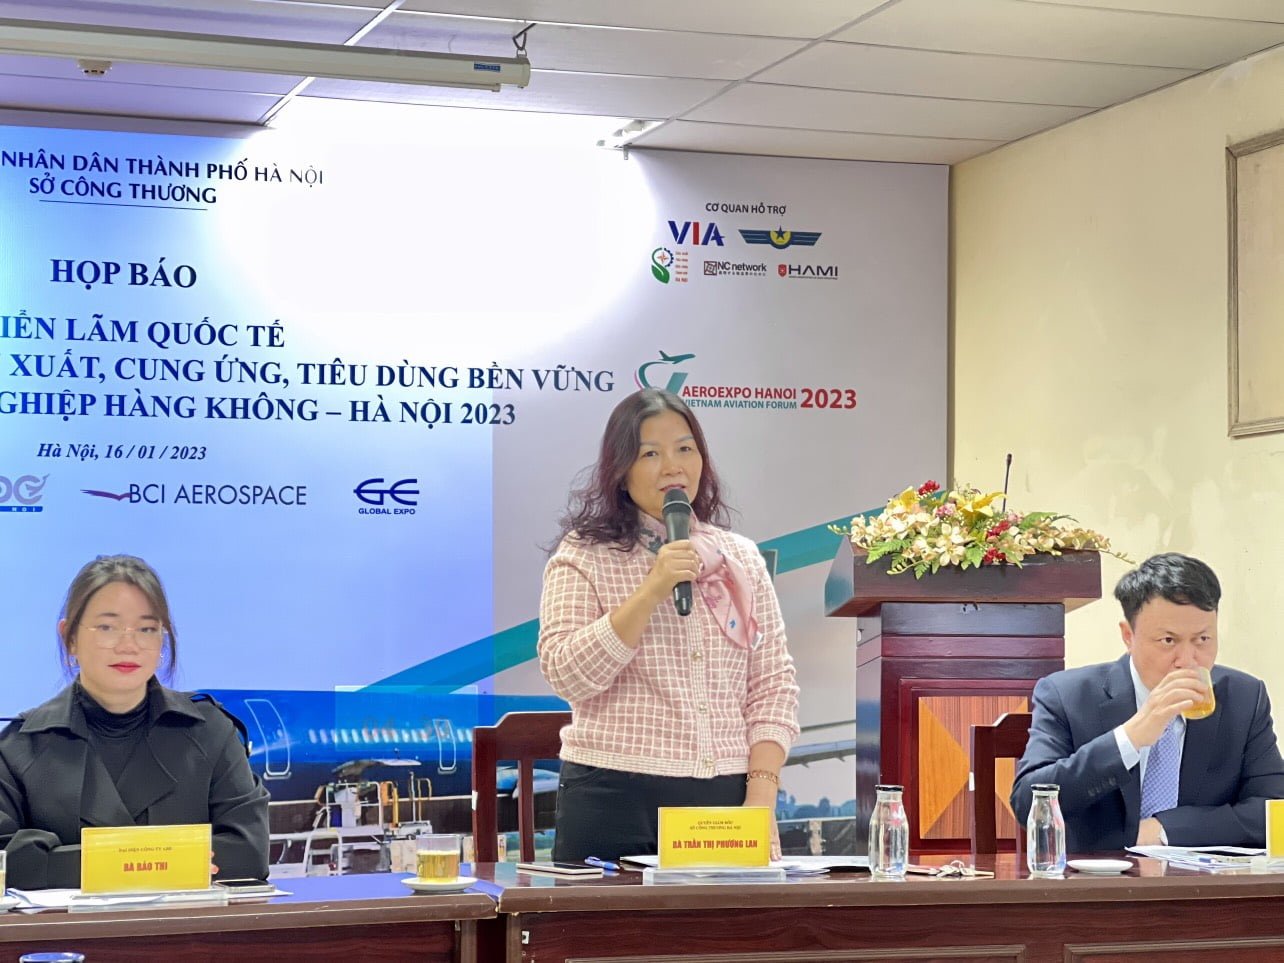 (Tiếng Việt) SPCNCL Hà Nội: Doanh nghiệp chủ lực sẽ tham gia Hội chợ triển lãm ngành công nghiệp hàng không tại Hà Nội